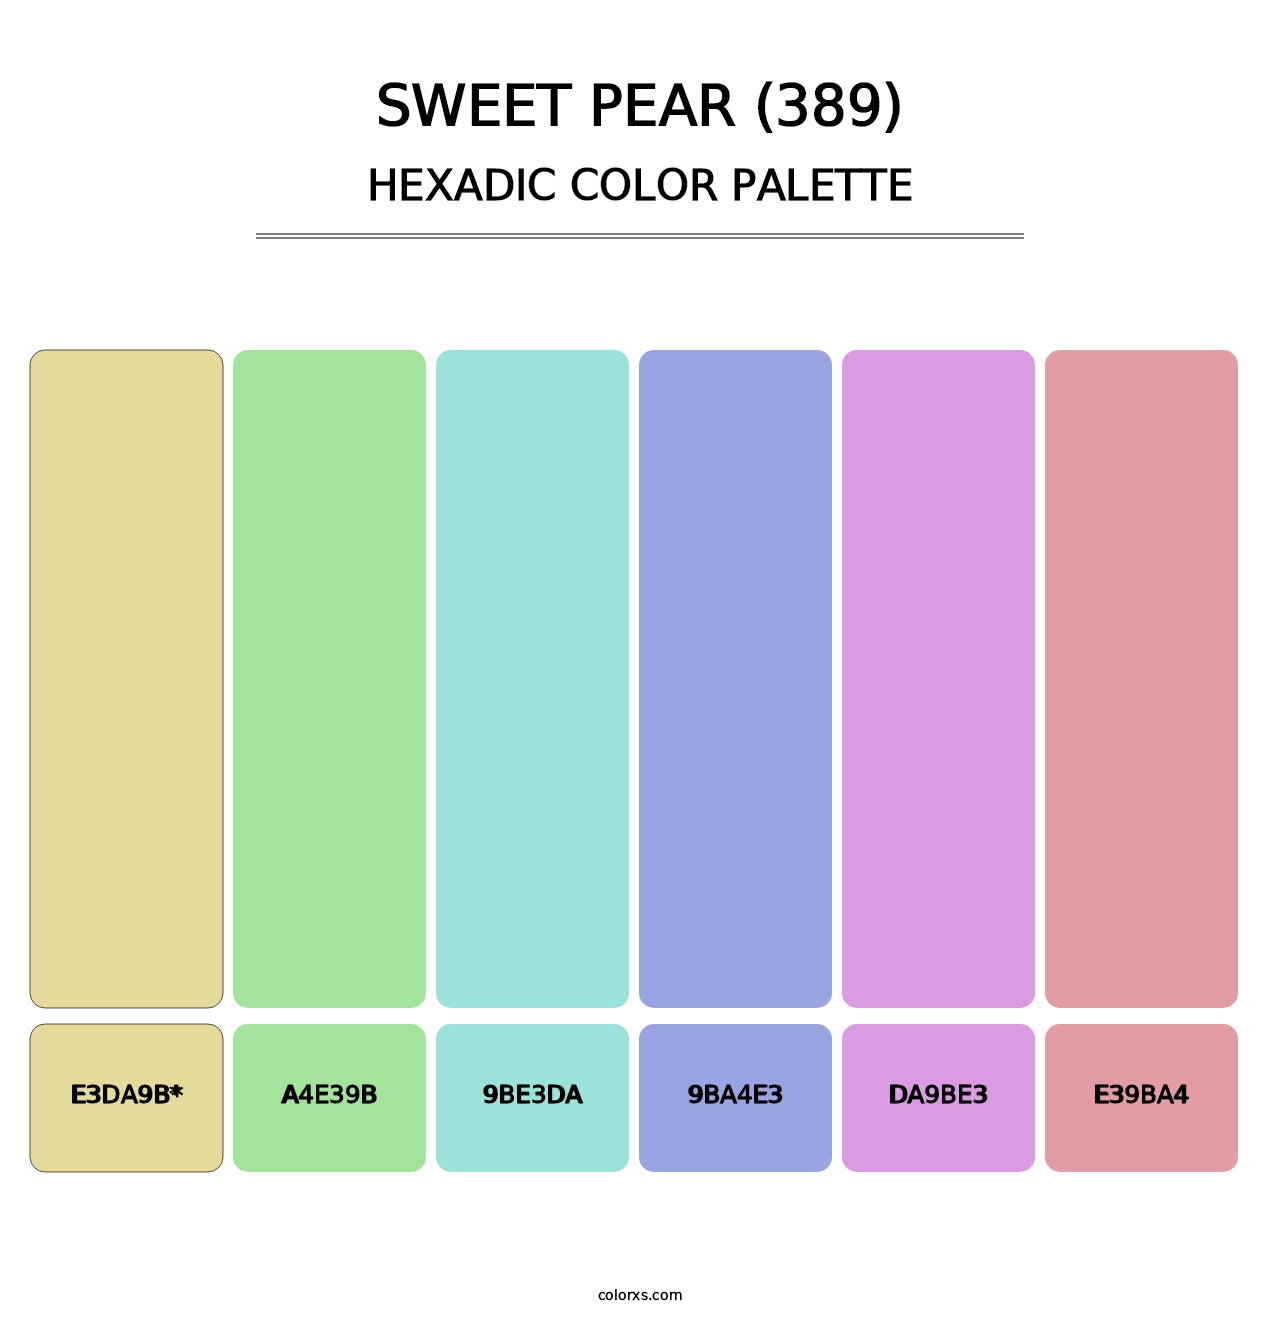 Sweet Pear (389) - Hexadic Color Palette